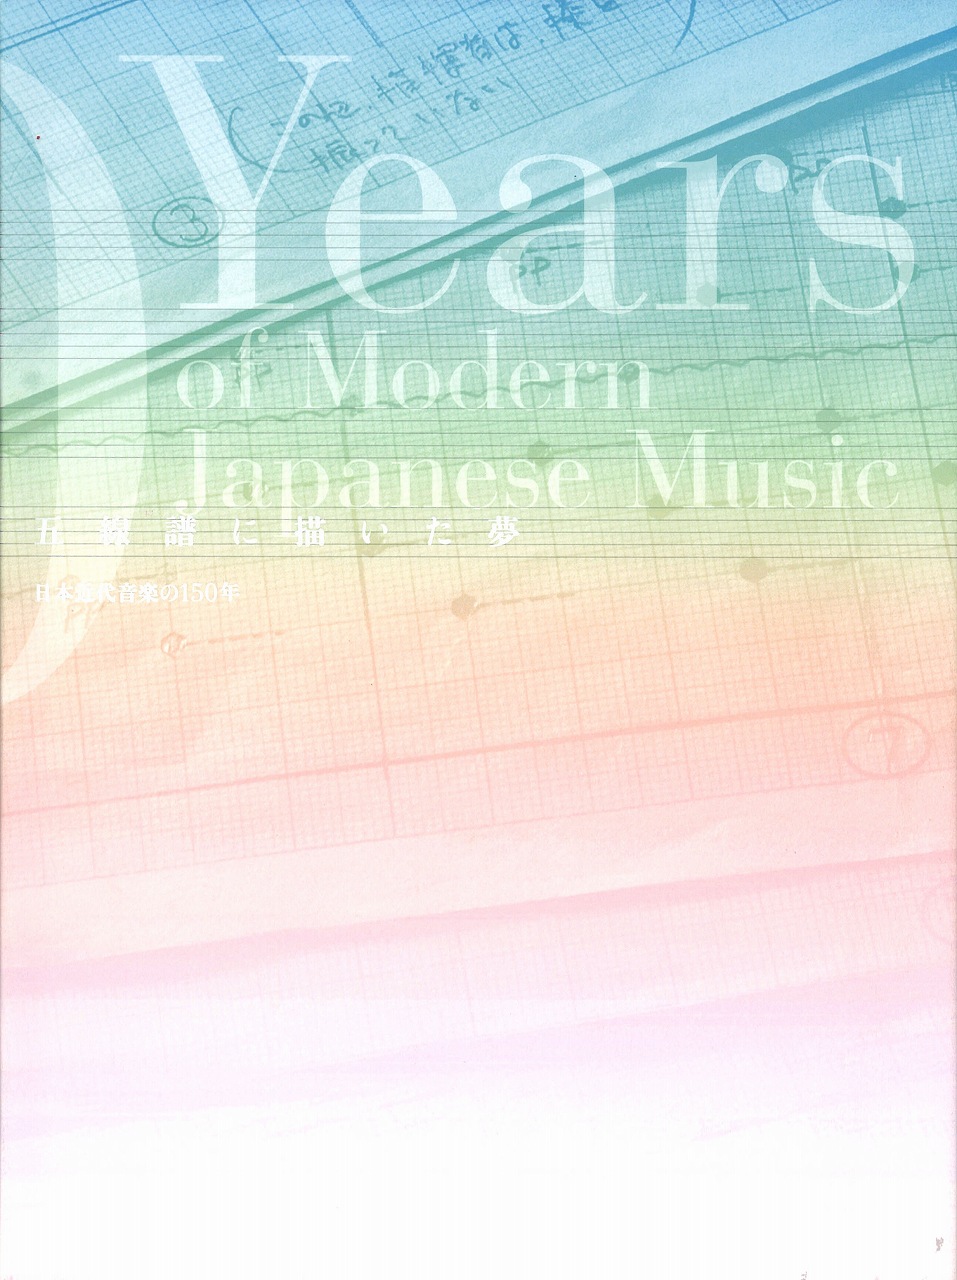 アカデミアミュージック 五線譜に描いた夢 日本近代音楽の150年 展覧会カタログ